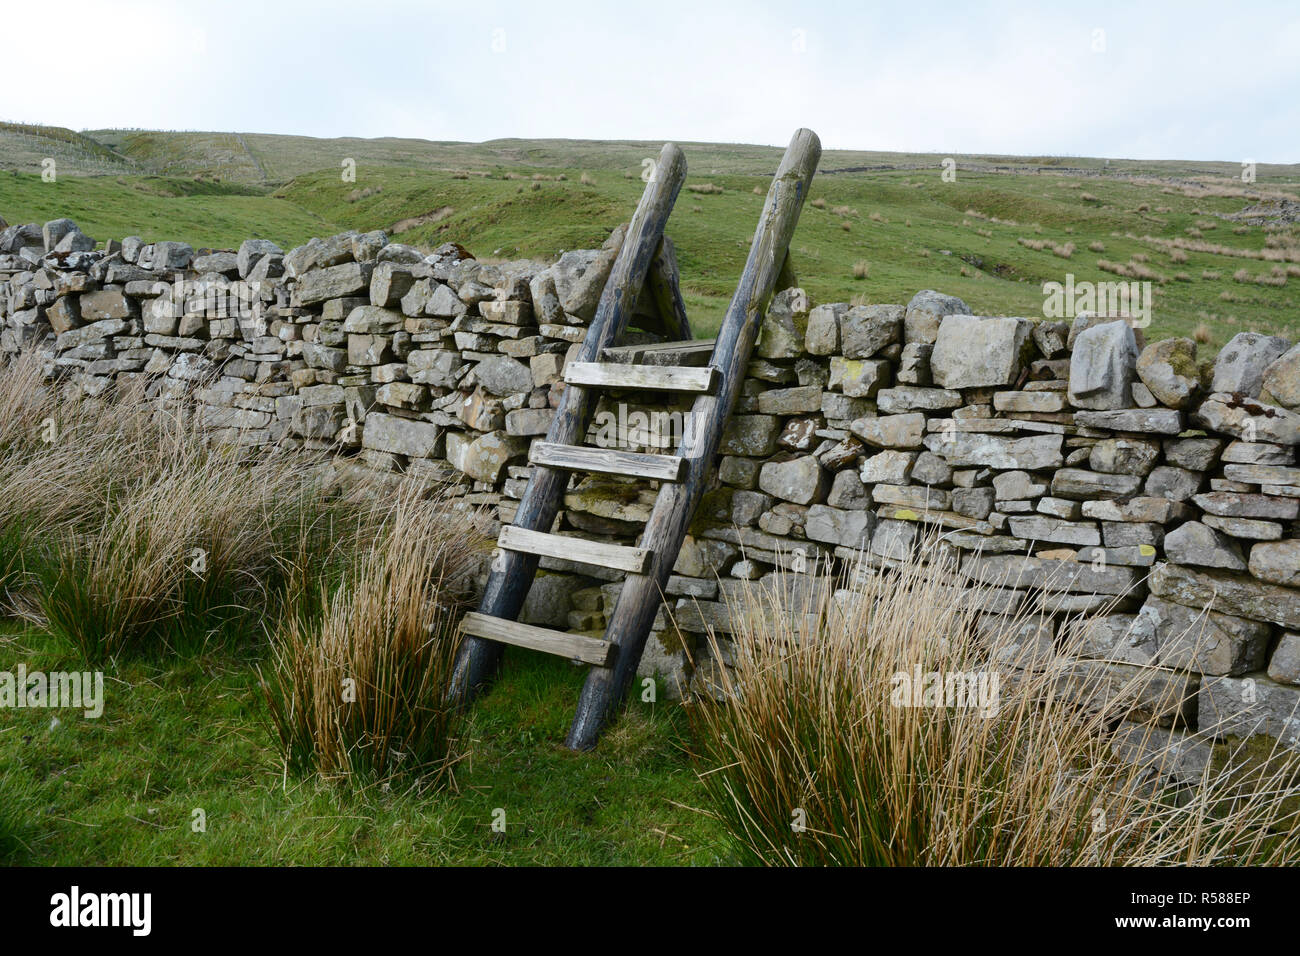 Una piccola scala di legno appoggiata a secco su un muro di pietra lungo le valli modo sentiero escursionistico, nello Yorkshire, Inghilterra, Regno Unito. Foto Stock